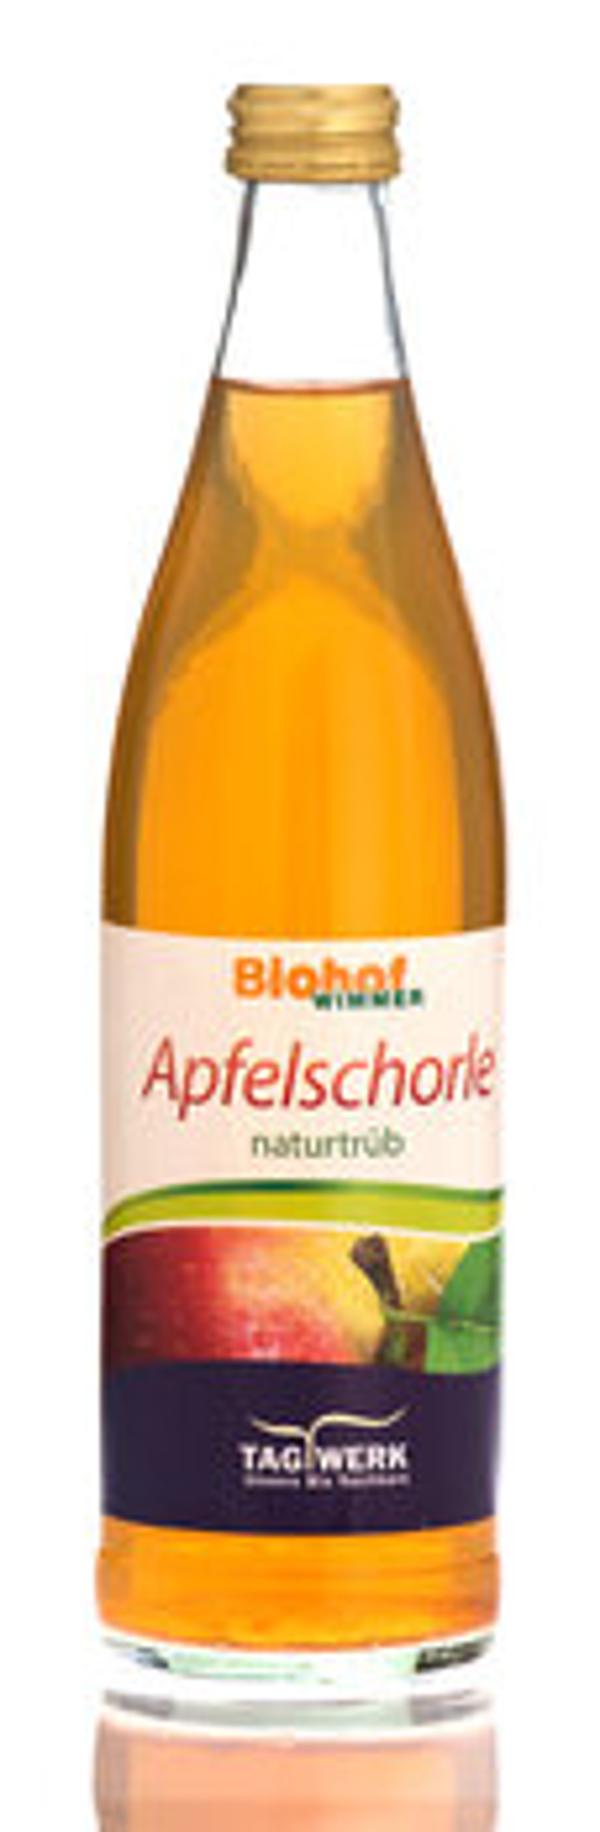 Produktfoto zu Apfelschorle naturtrüb Bio 0,5